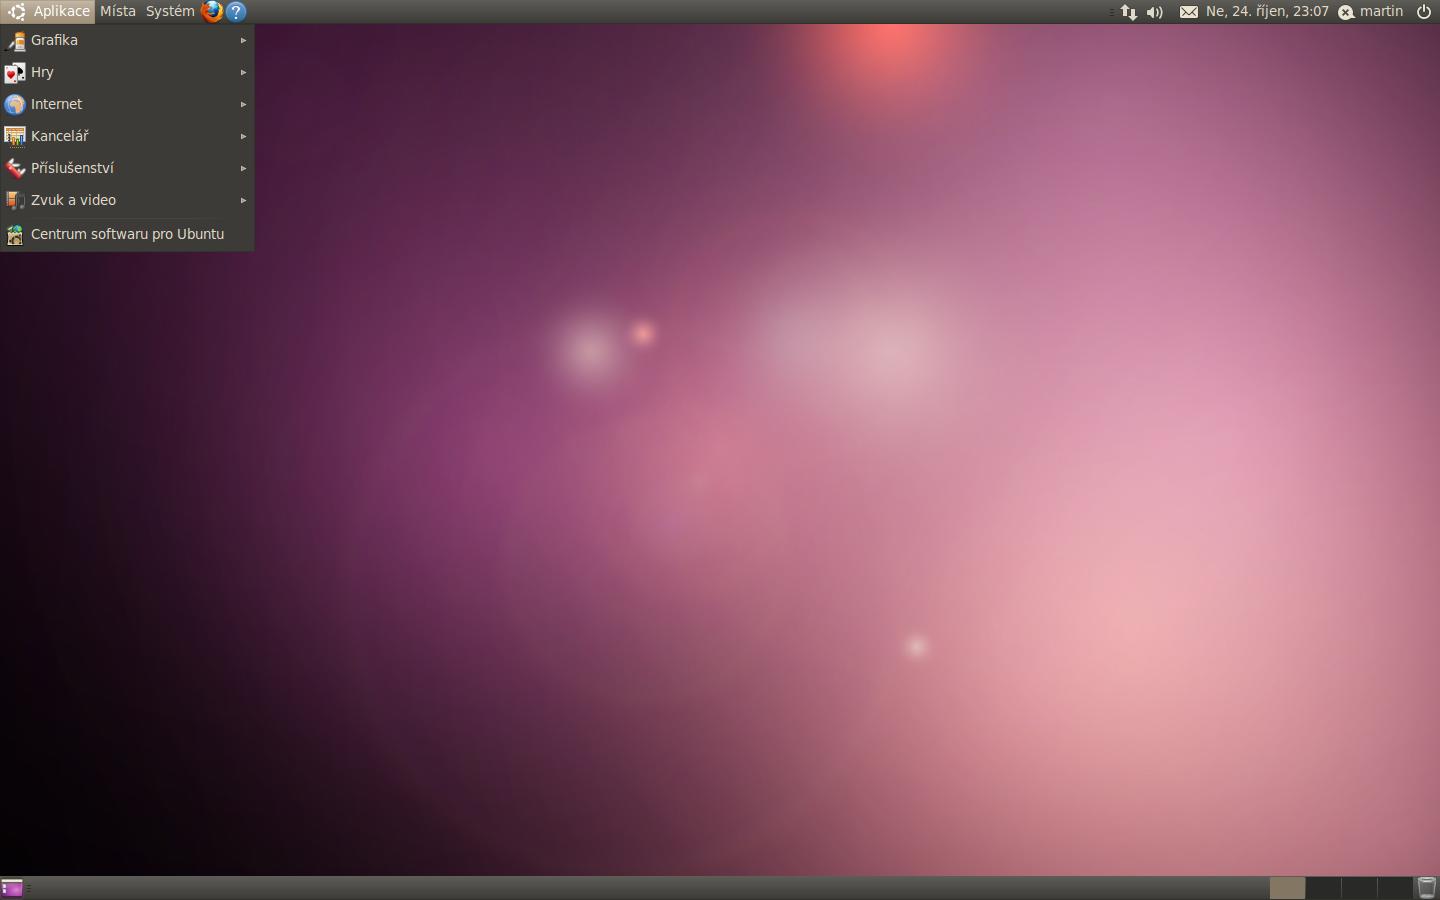 Ubuntu na rozdíl od Windows má panely dva - horní a dolní - i když toto označení je zavádějící, neboť mohou být libovolně přemístěny nebo sloučeny do panelu jednoho.